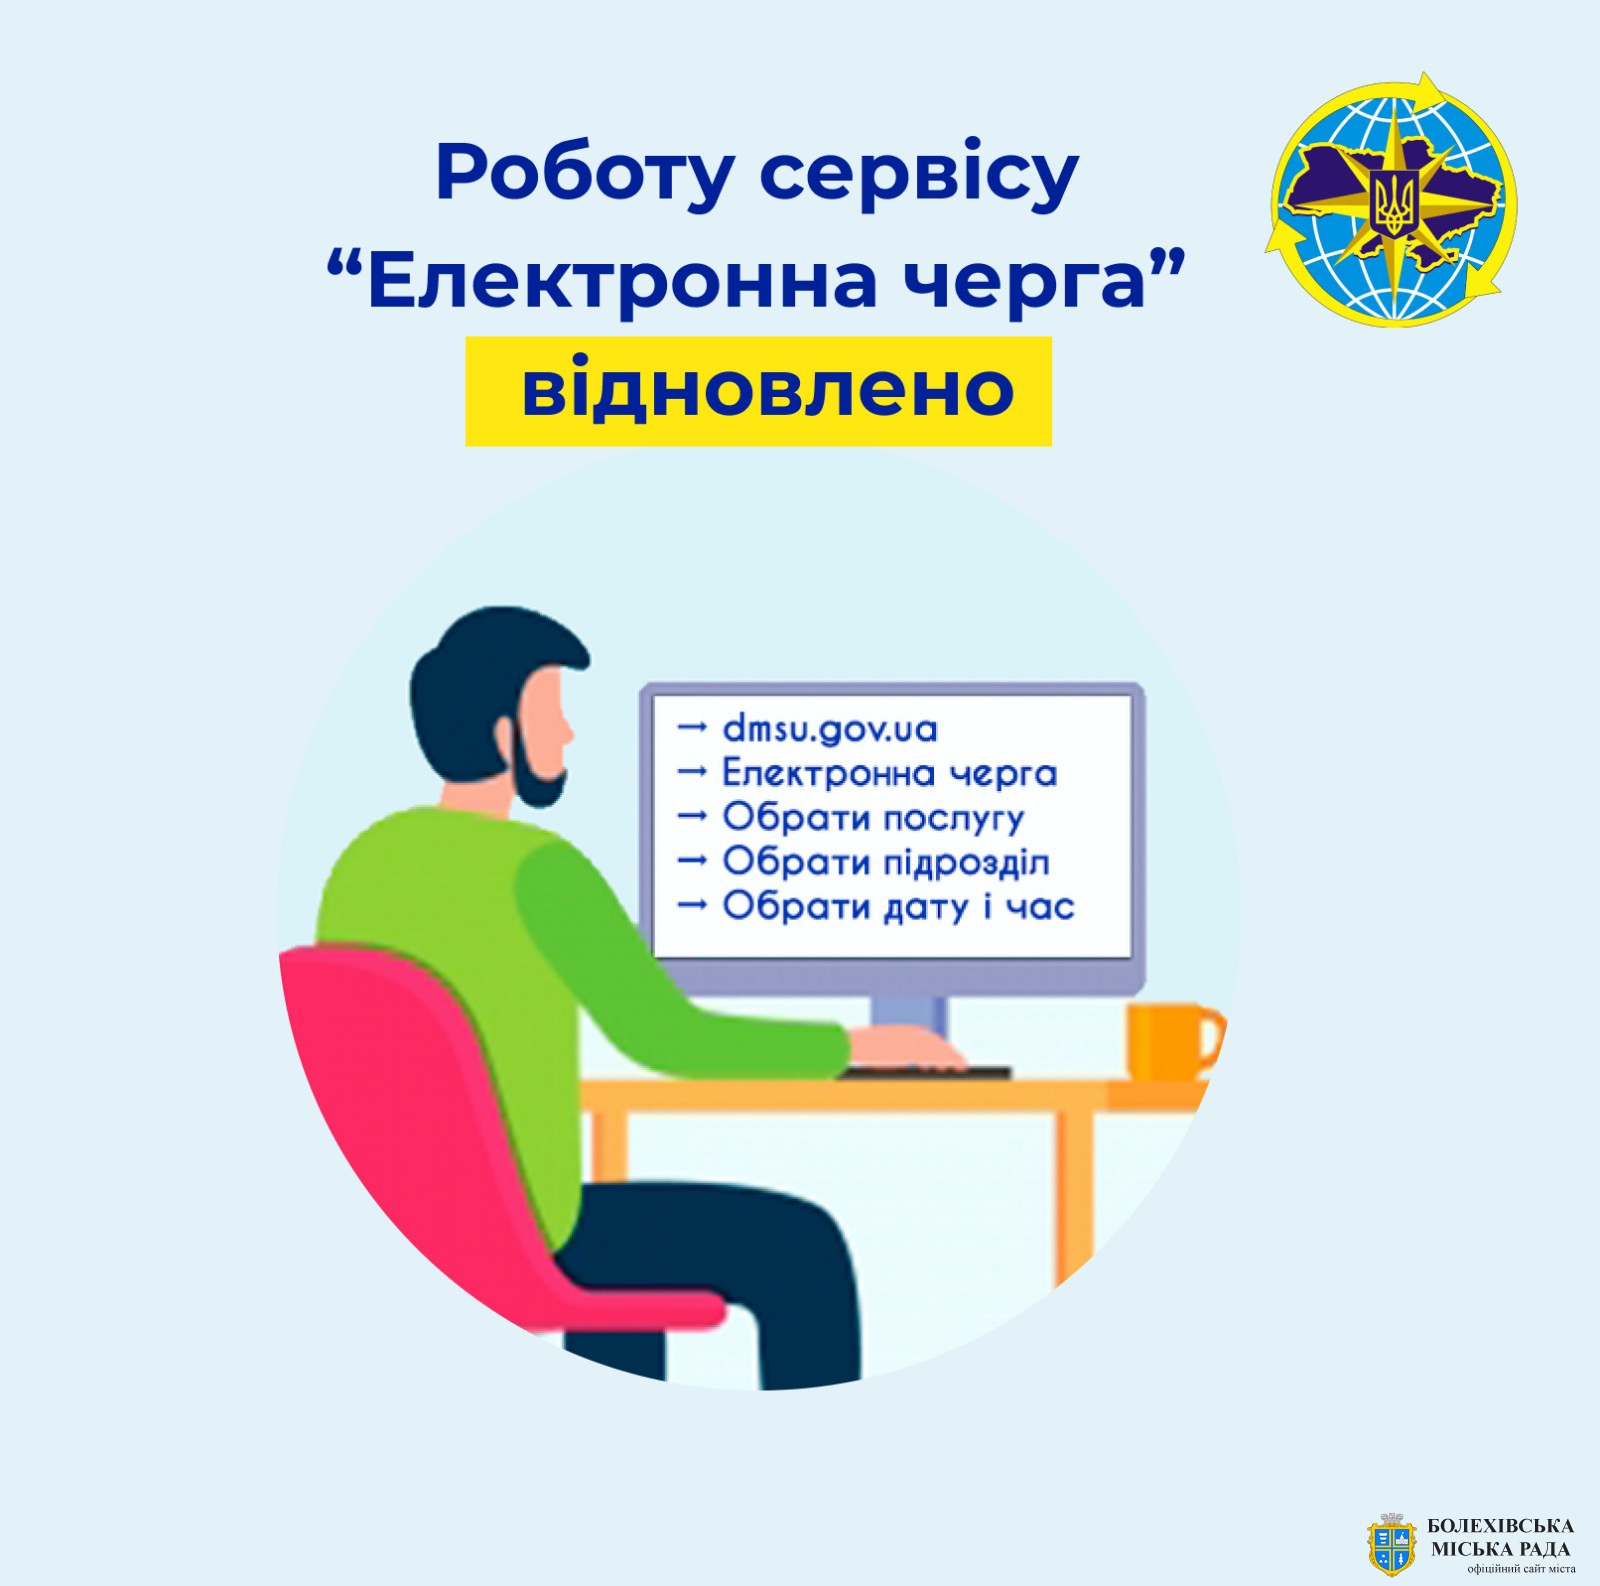 ✅ Державна міграційна служба України частково відновлює роботу онлайн-сервісу «Електронна черга».